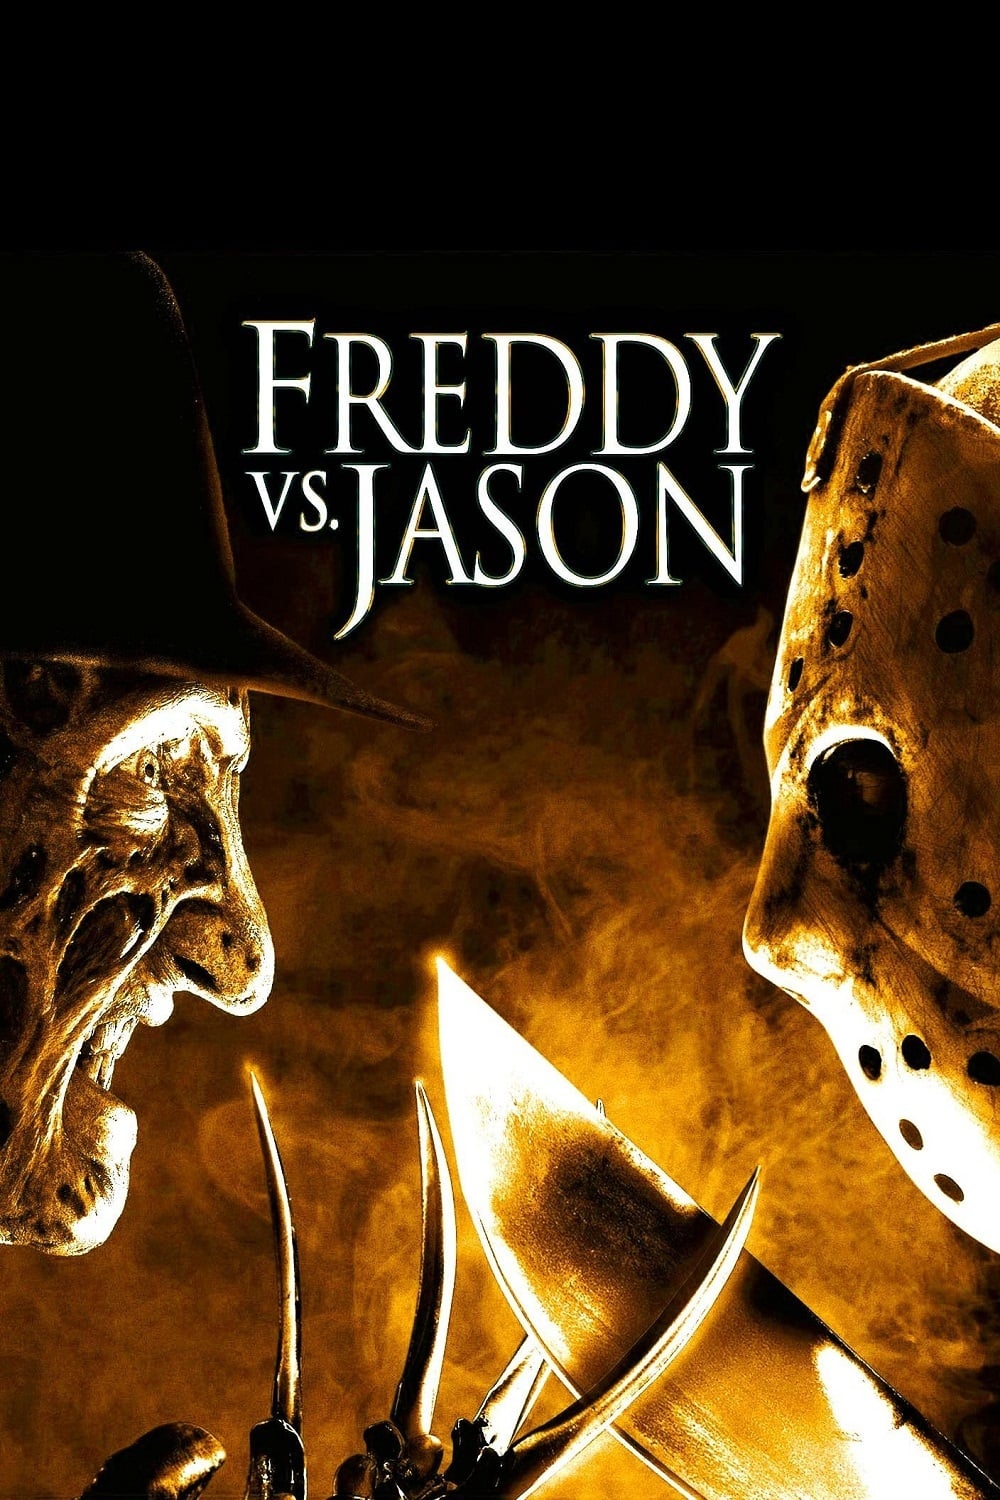 Freddy vs. Jason online